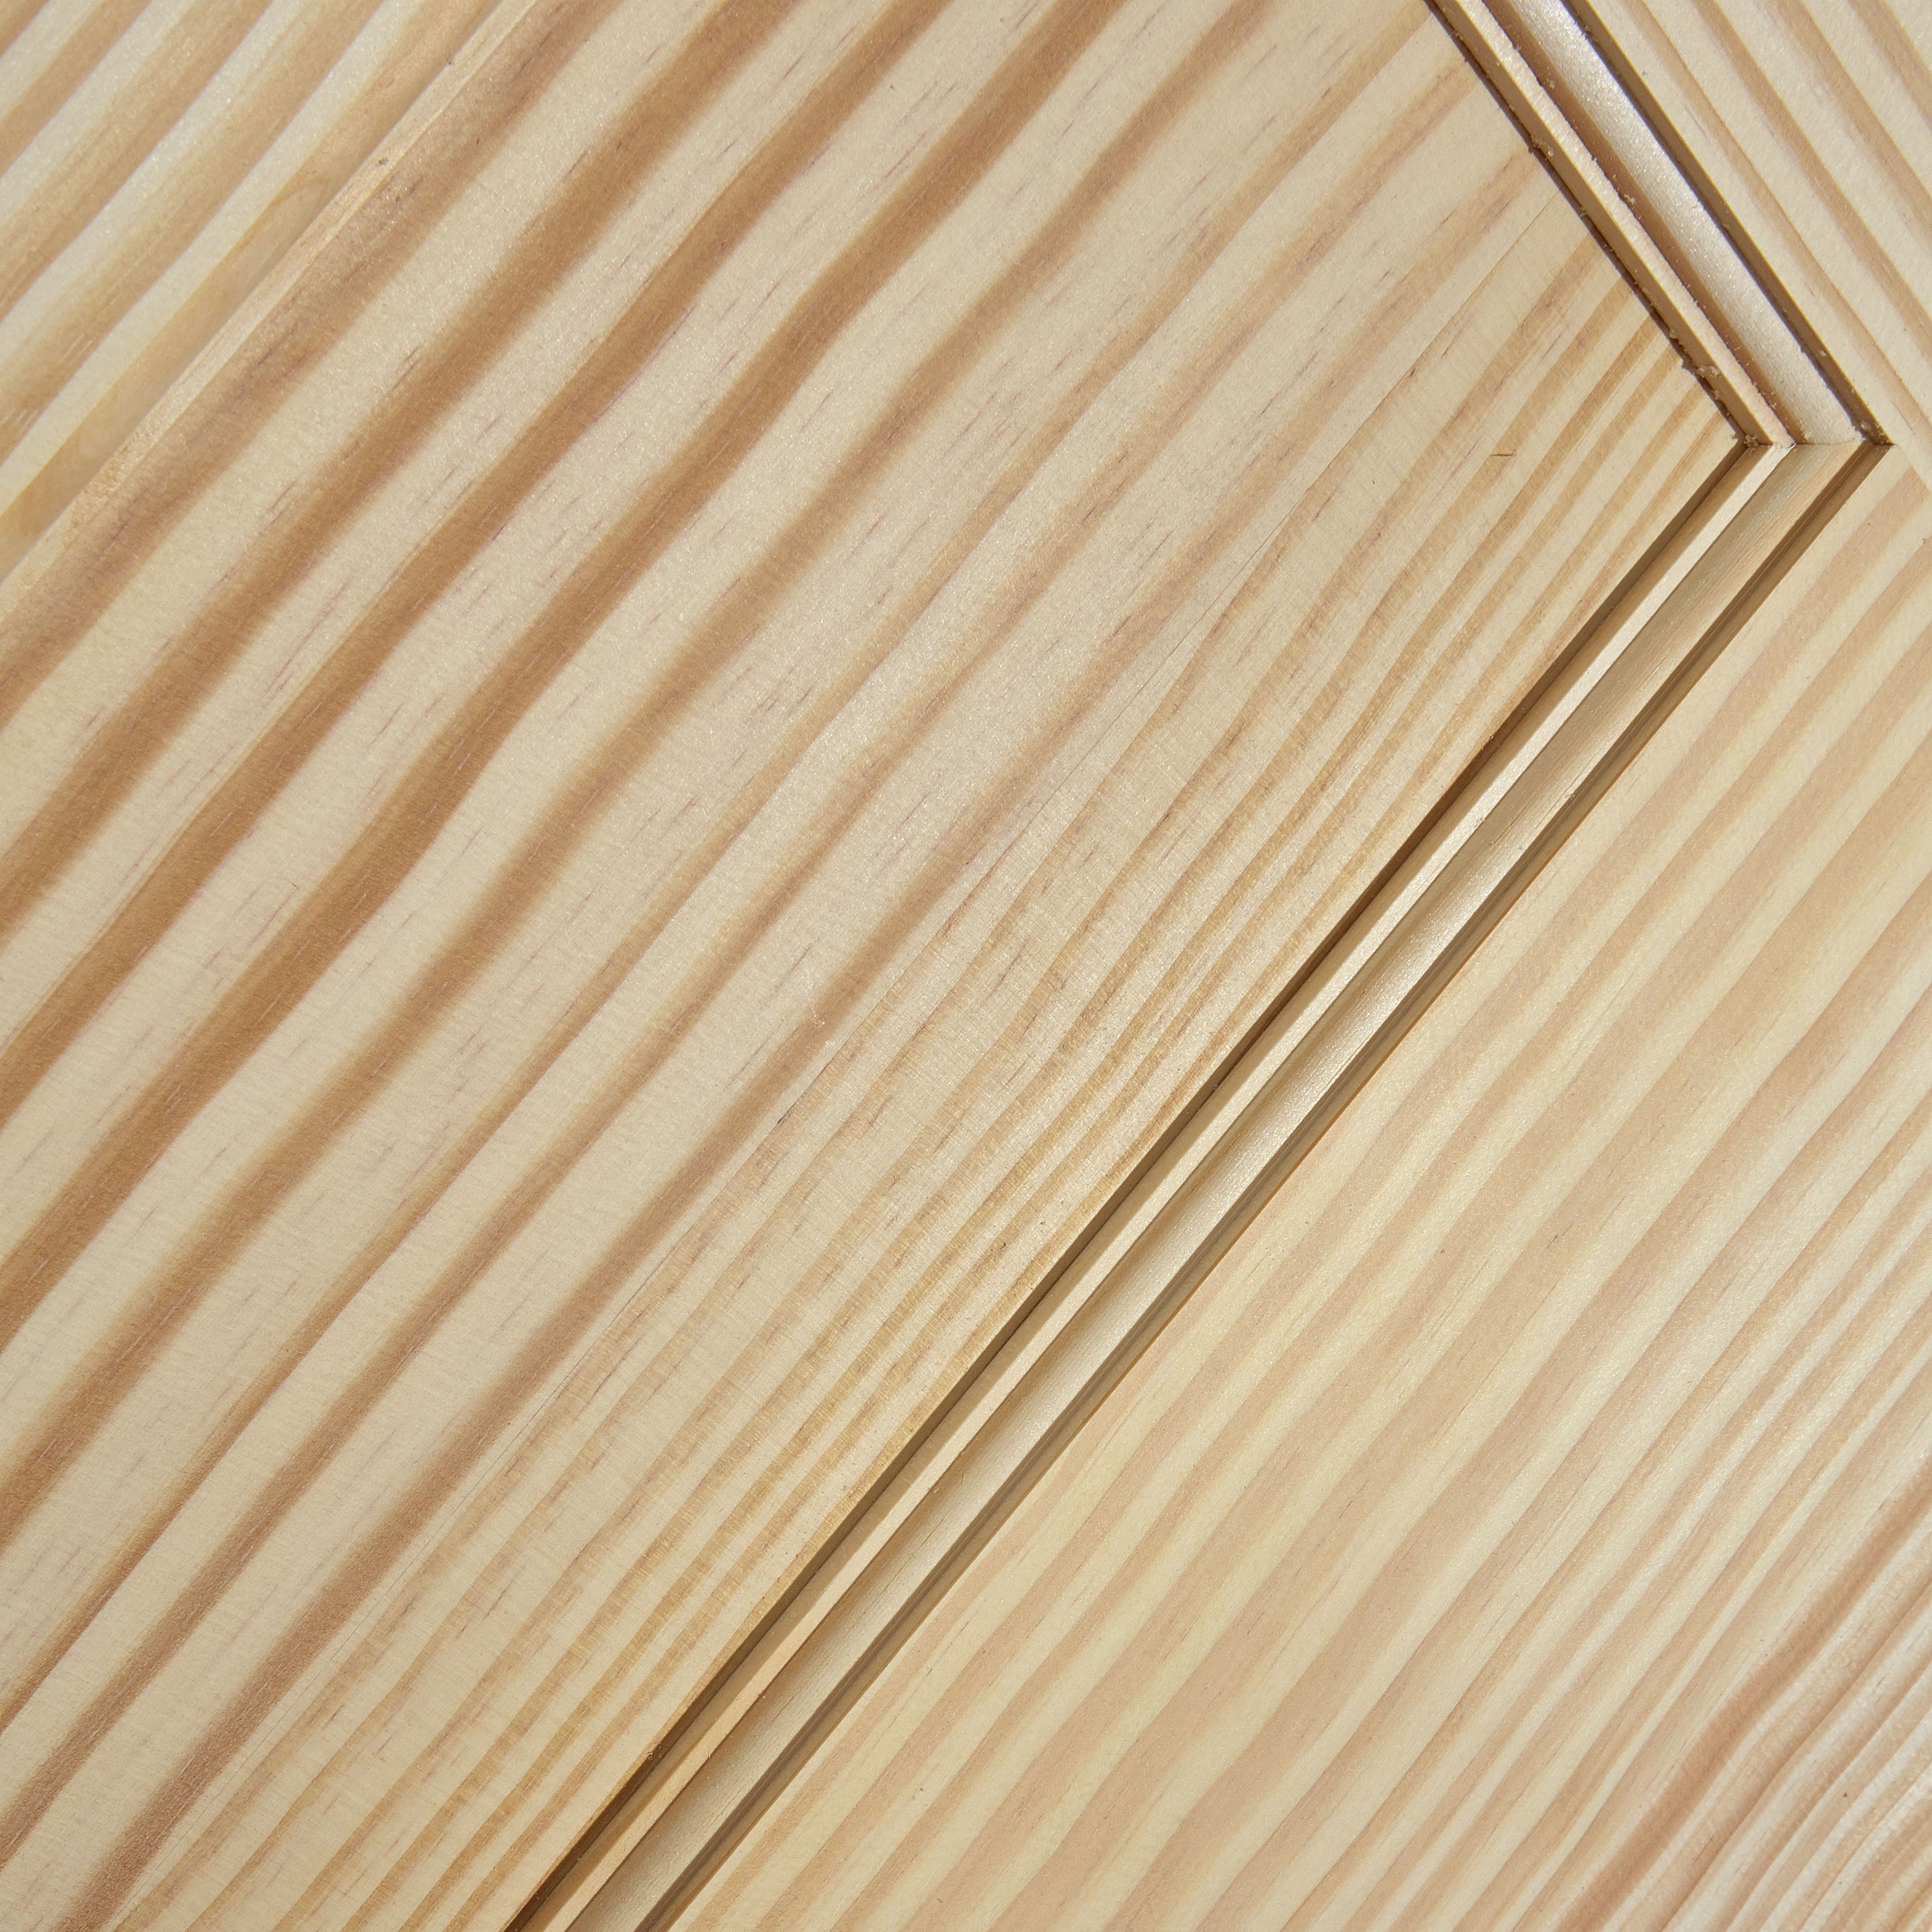 Vertical 2 panel Unglazed Contemporary Pine veneer Internal Clear pine Door, (H)1981mm (W)686mm (T)35mm